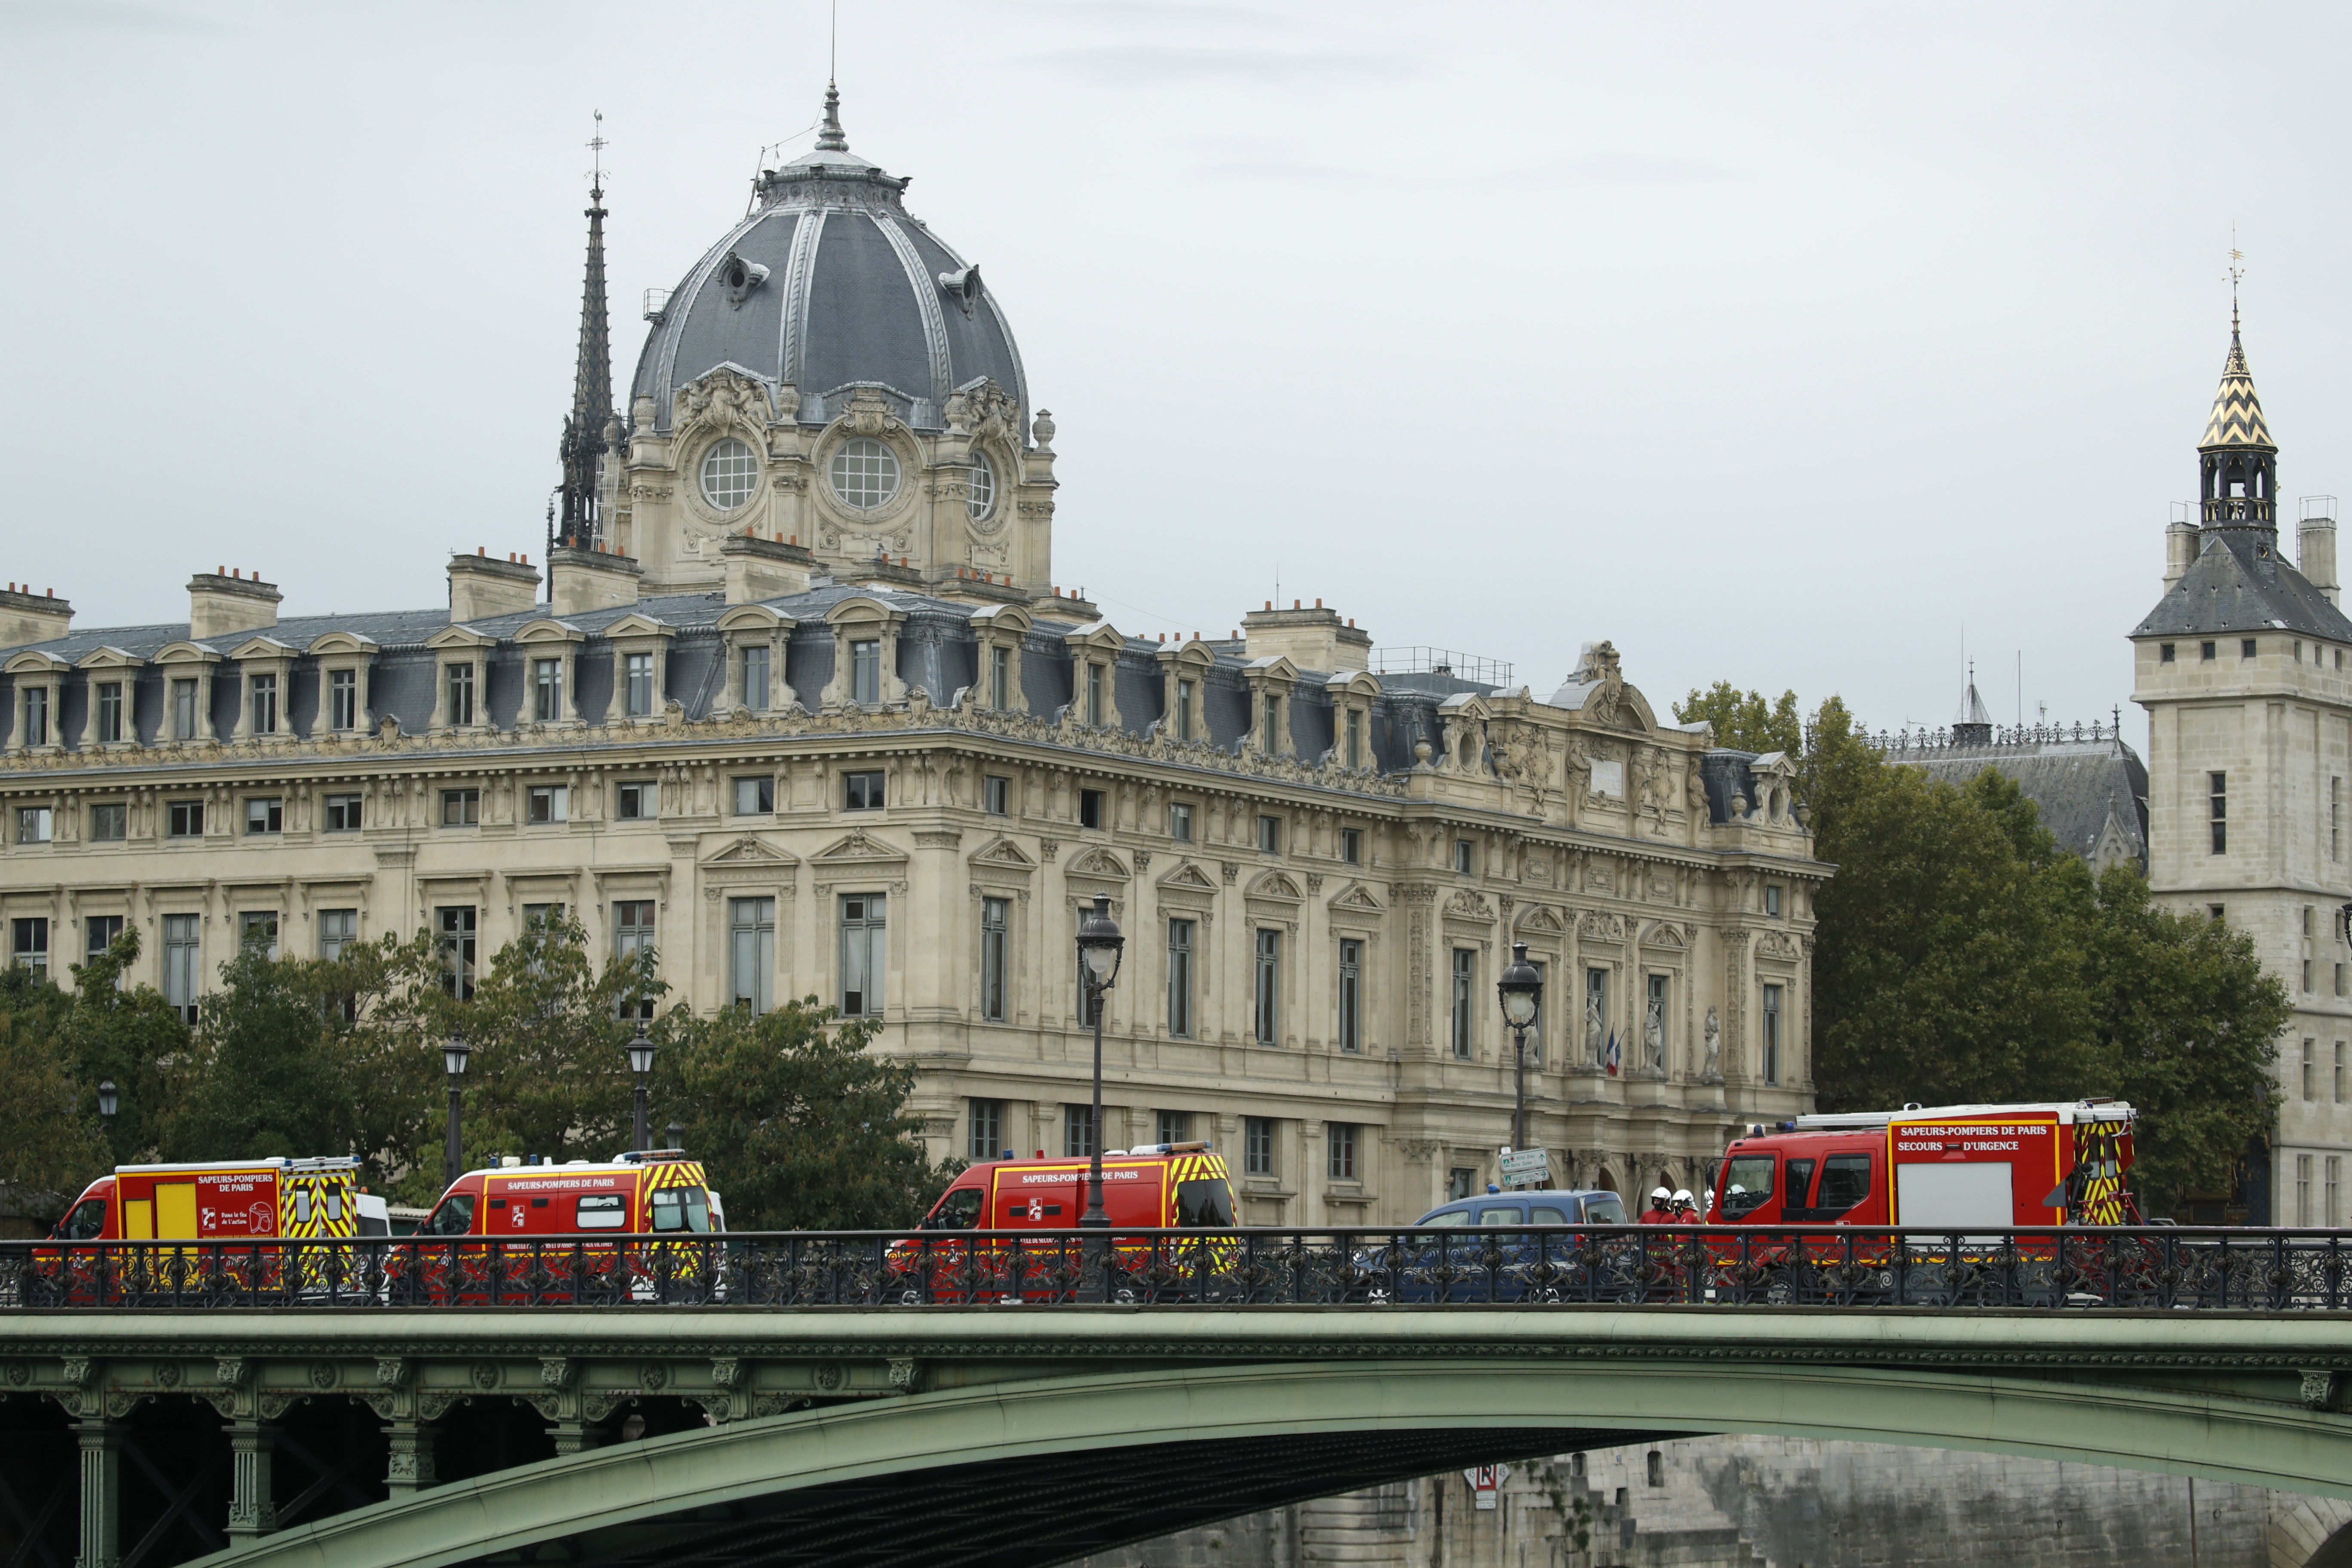 Мъж с нож беше застрелян от френската полиция, след като нападна служители пред централното полицейско управление в Париж.